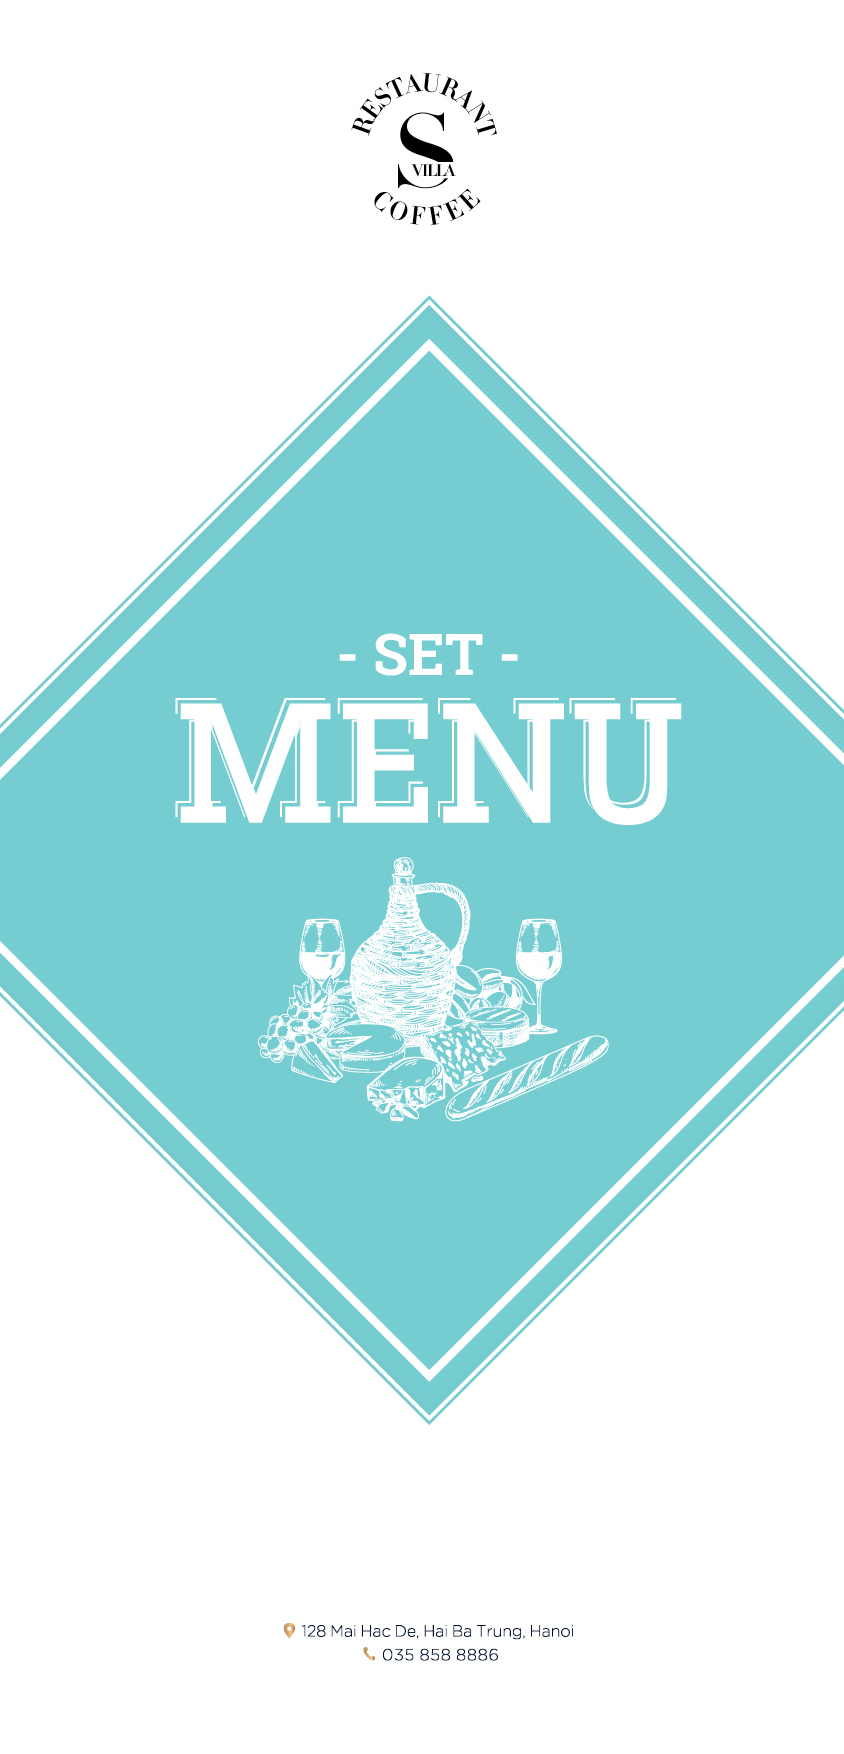 Set menu 2016